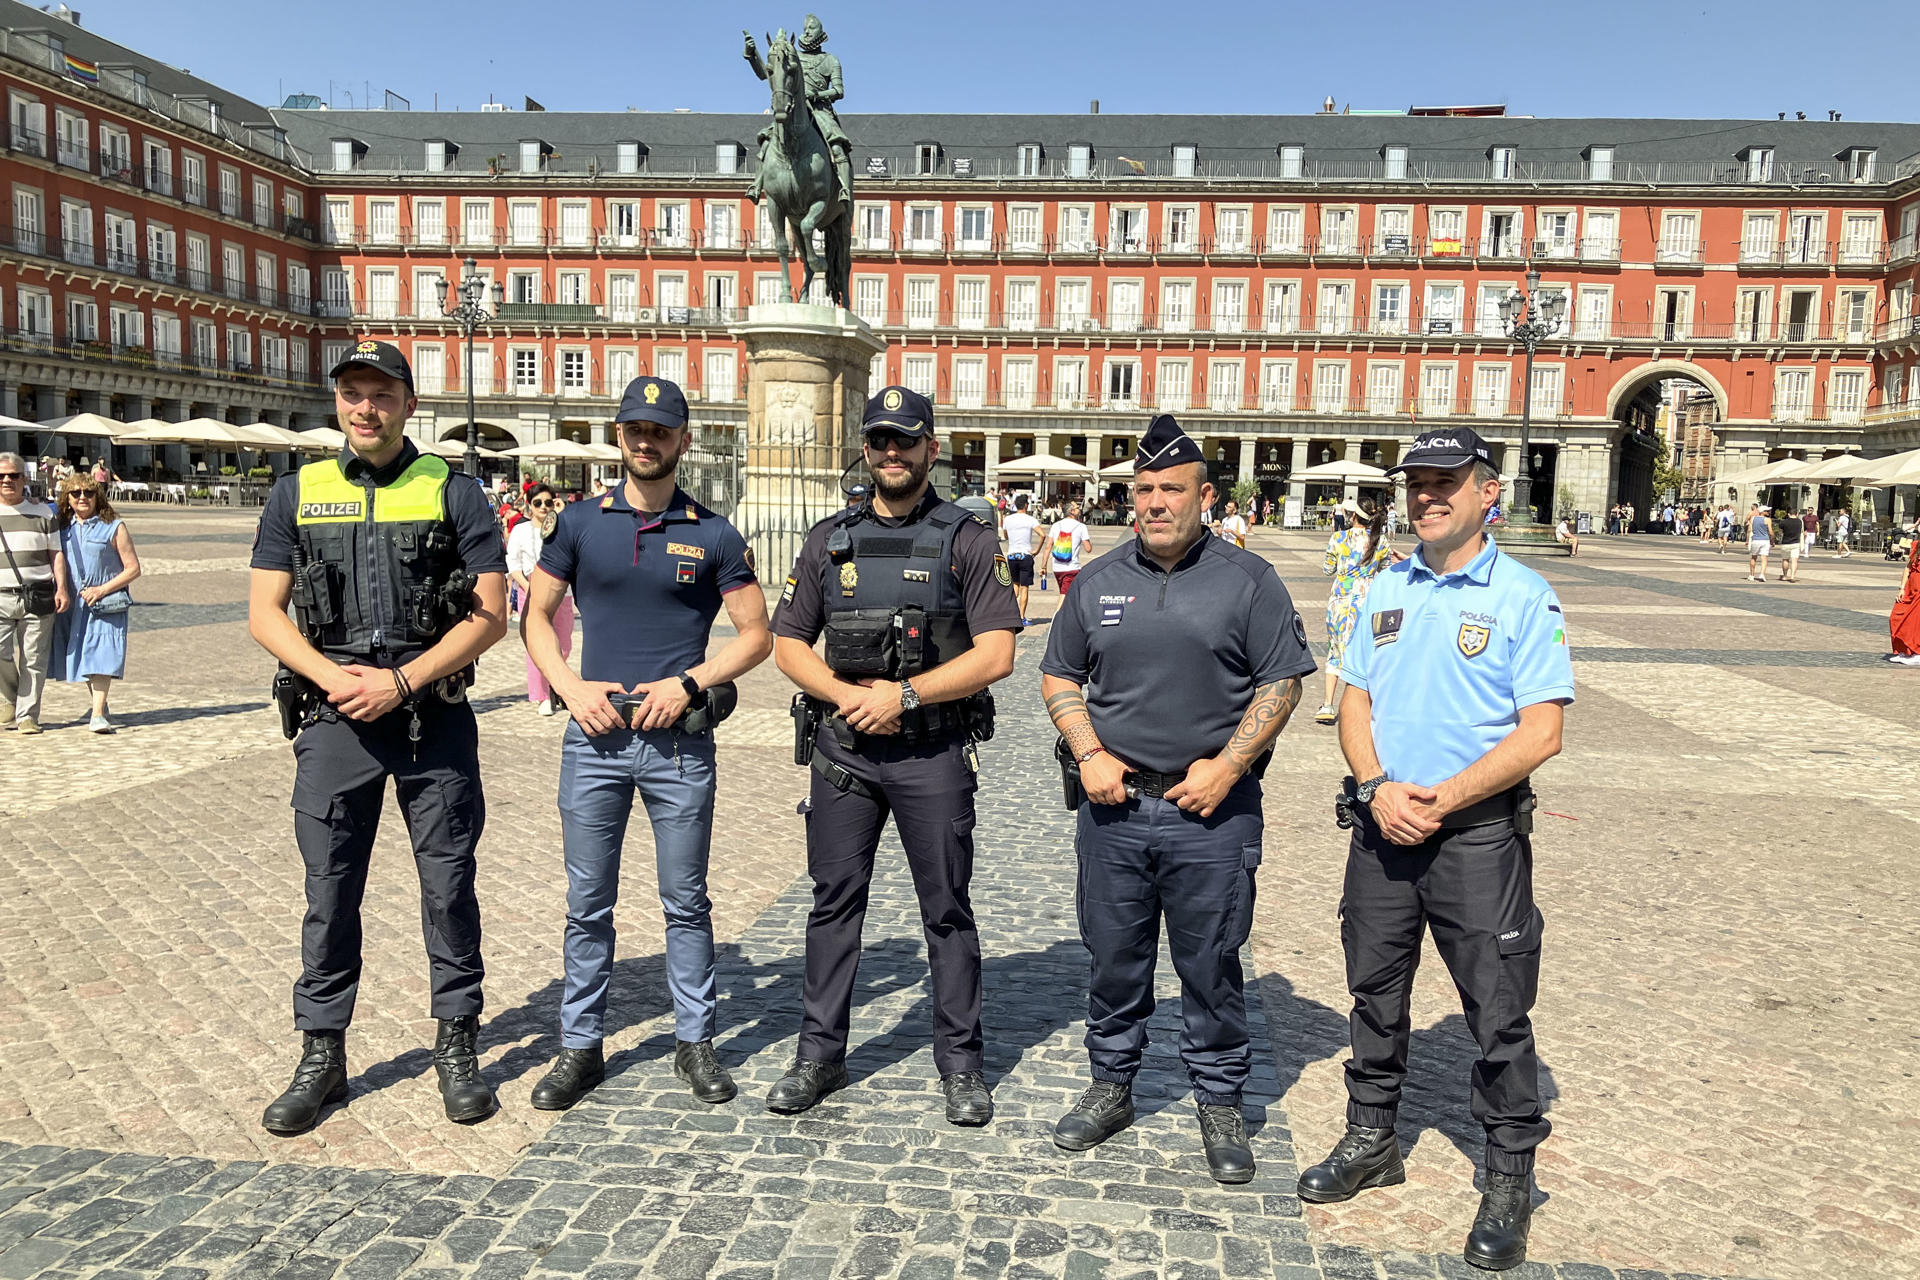 El "Erasmus policial" en España que sorprende a los turistas